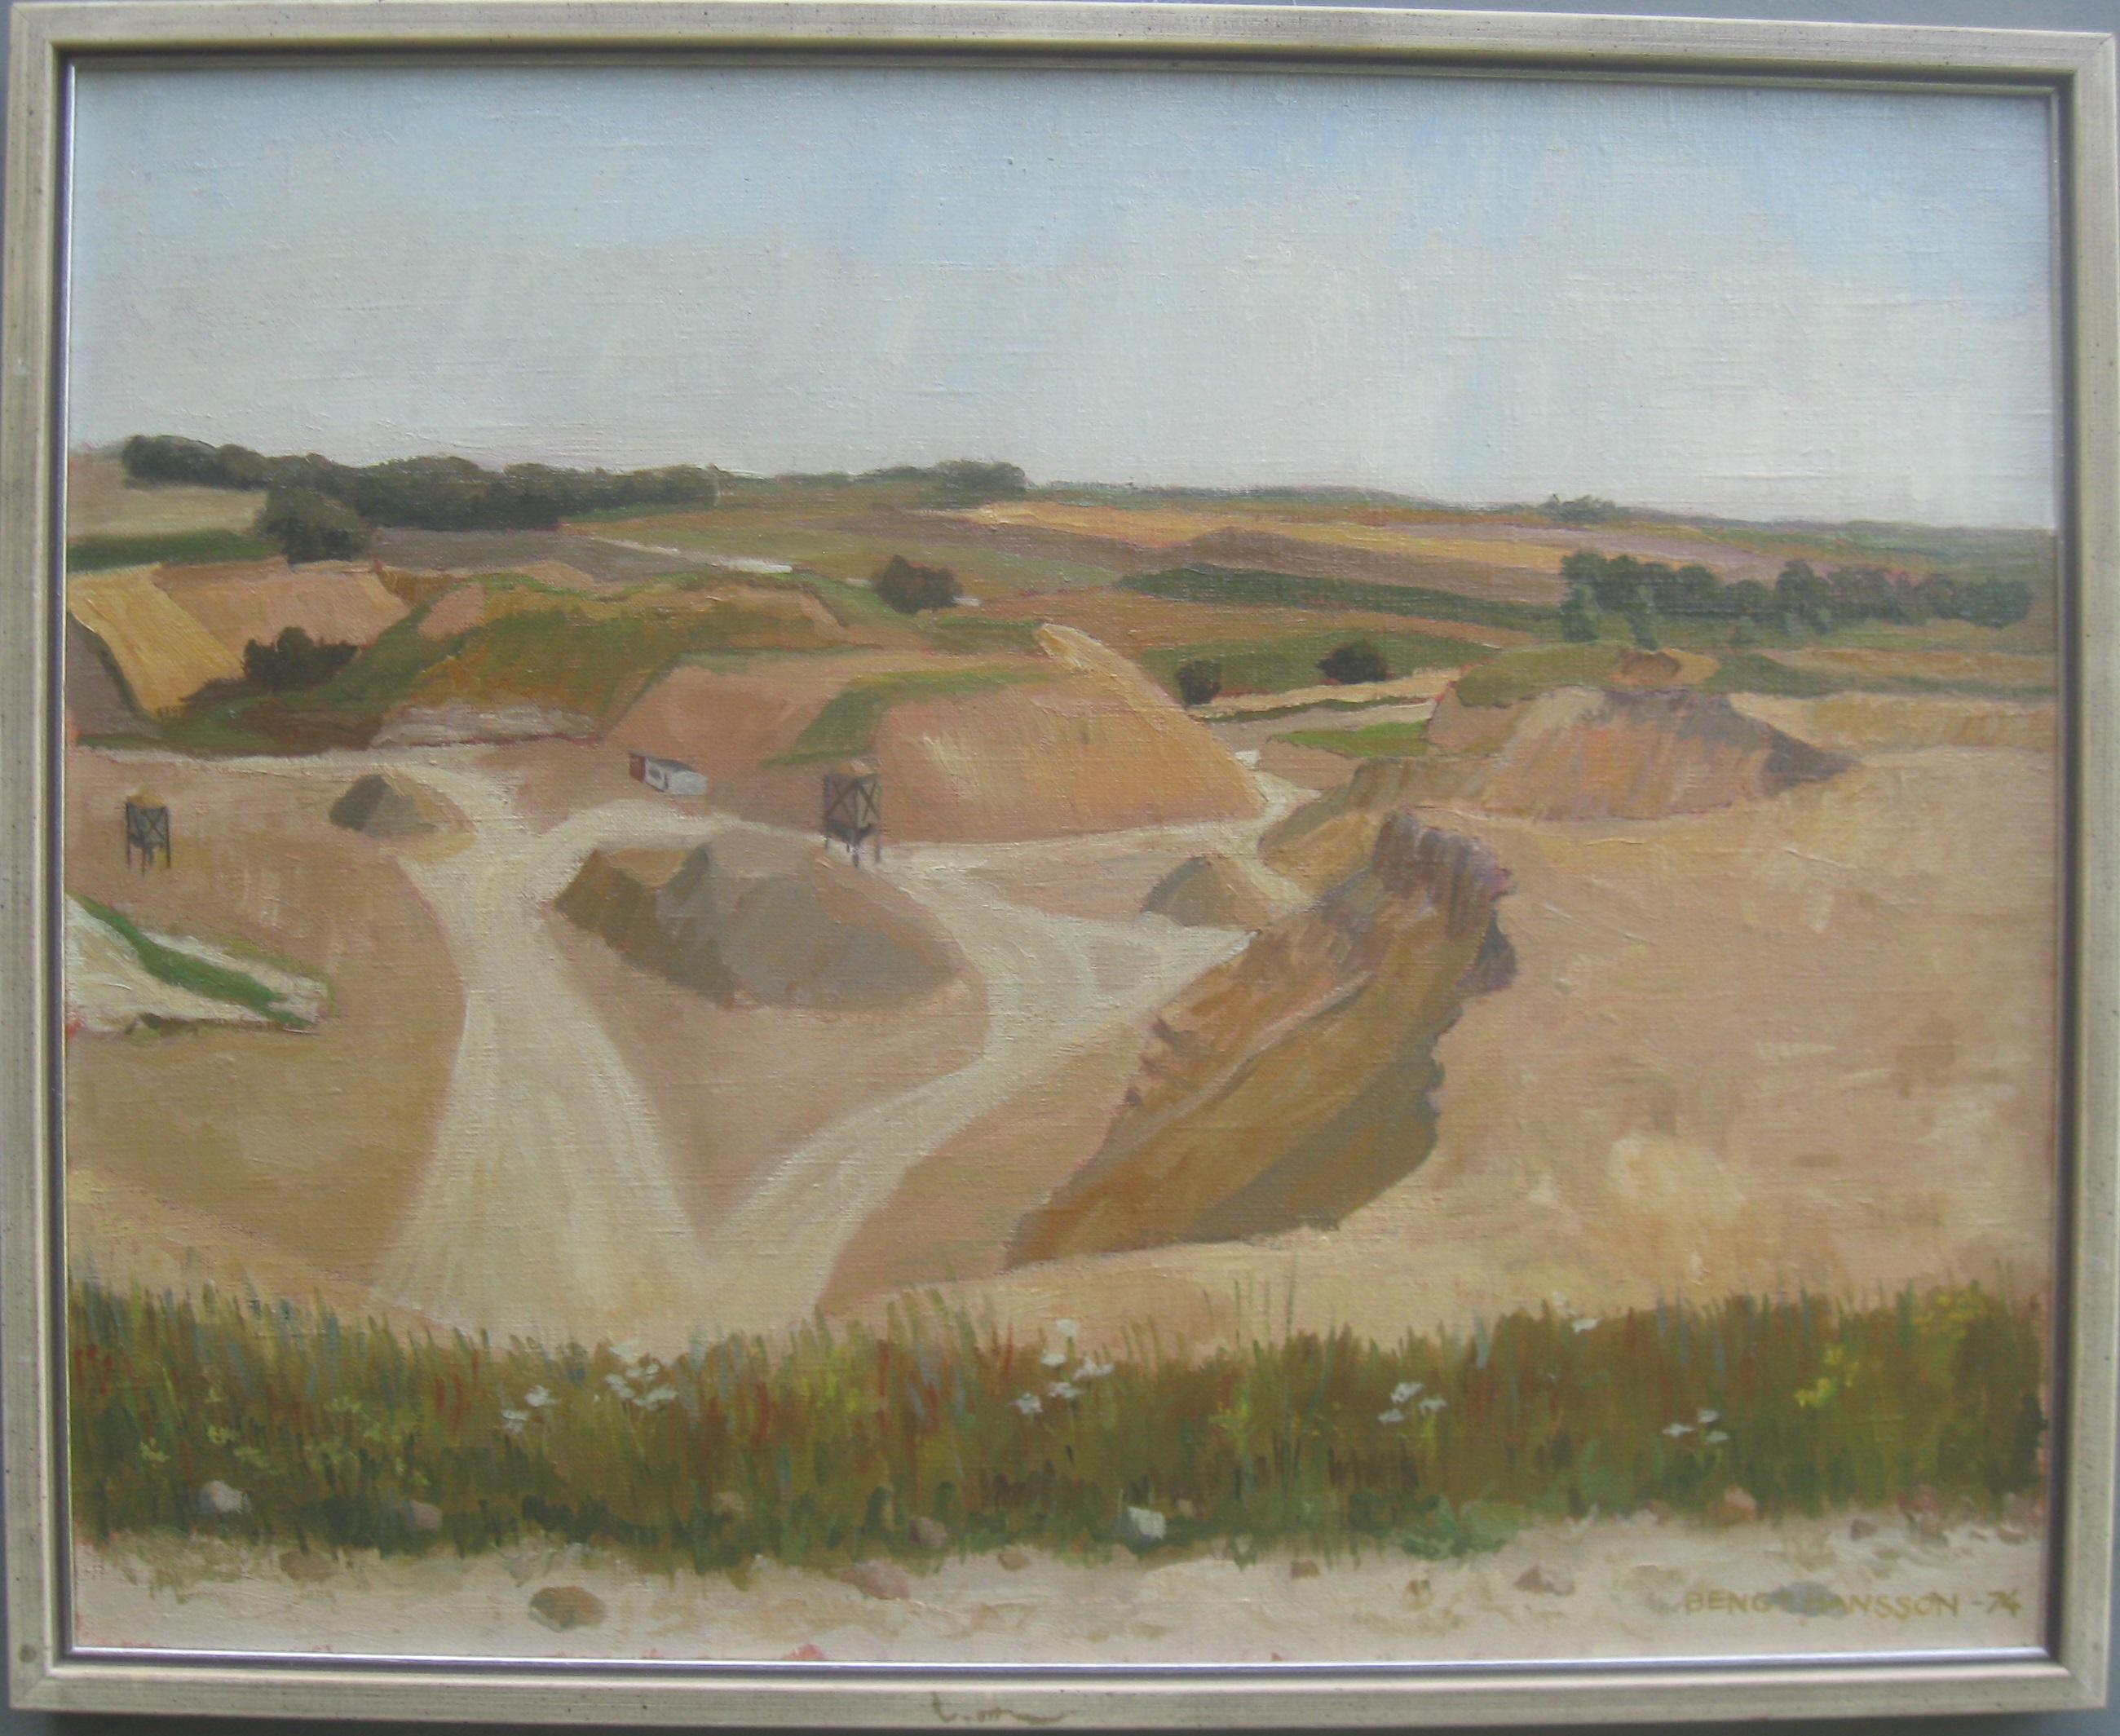 Bengy Hansson Landscape Painting - 'Landscape with Quarry' oil on canvas circa 1974